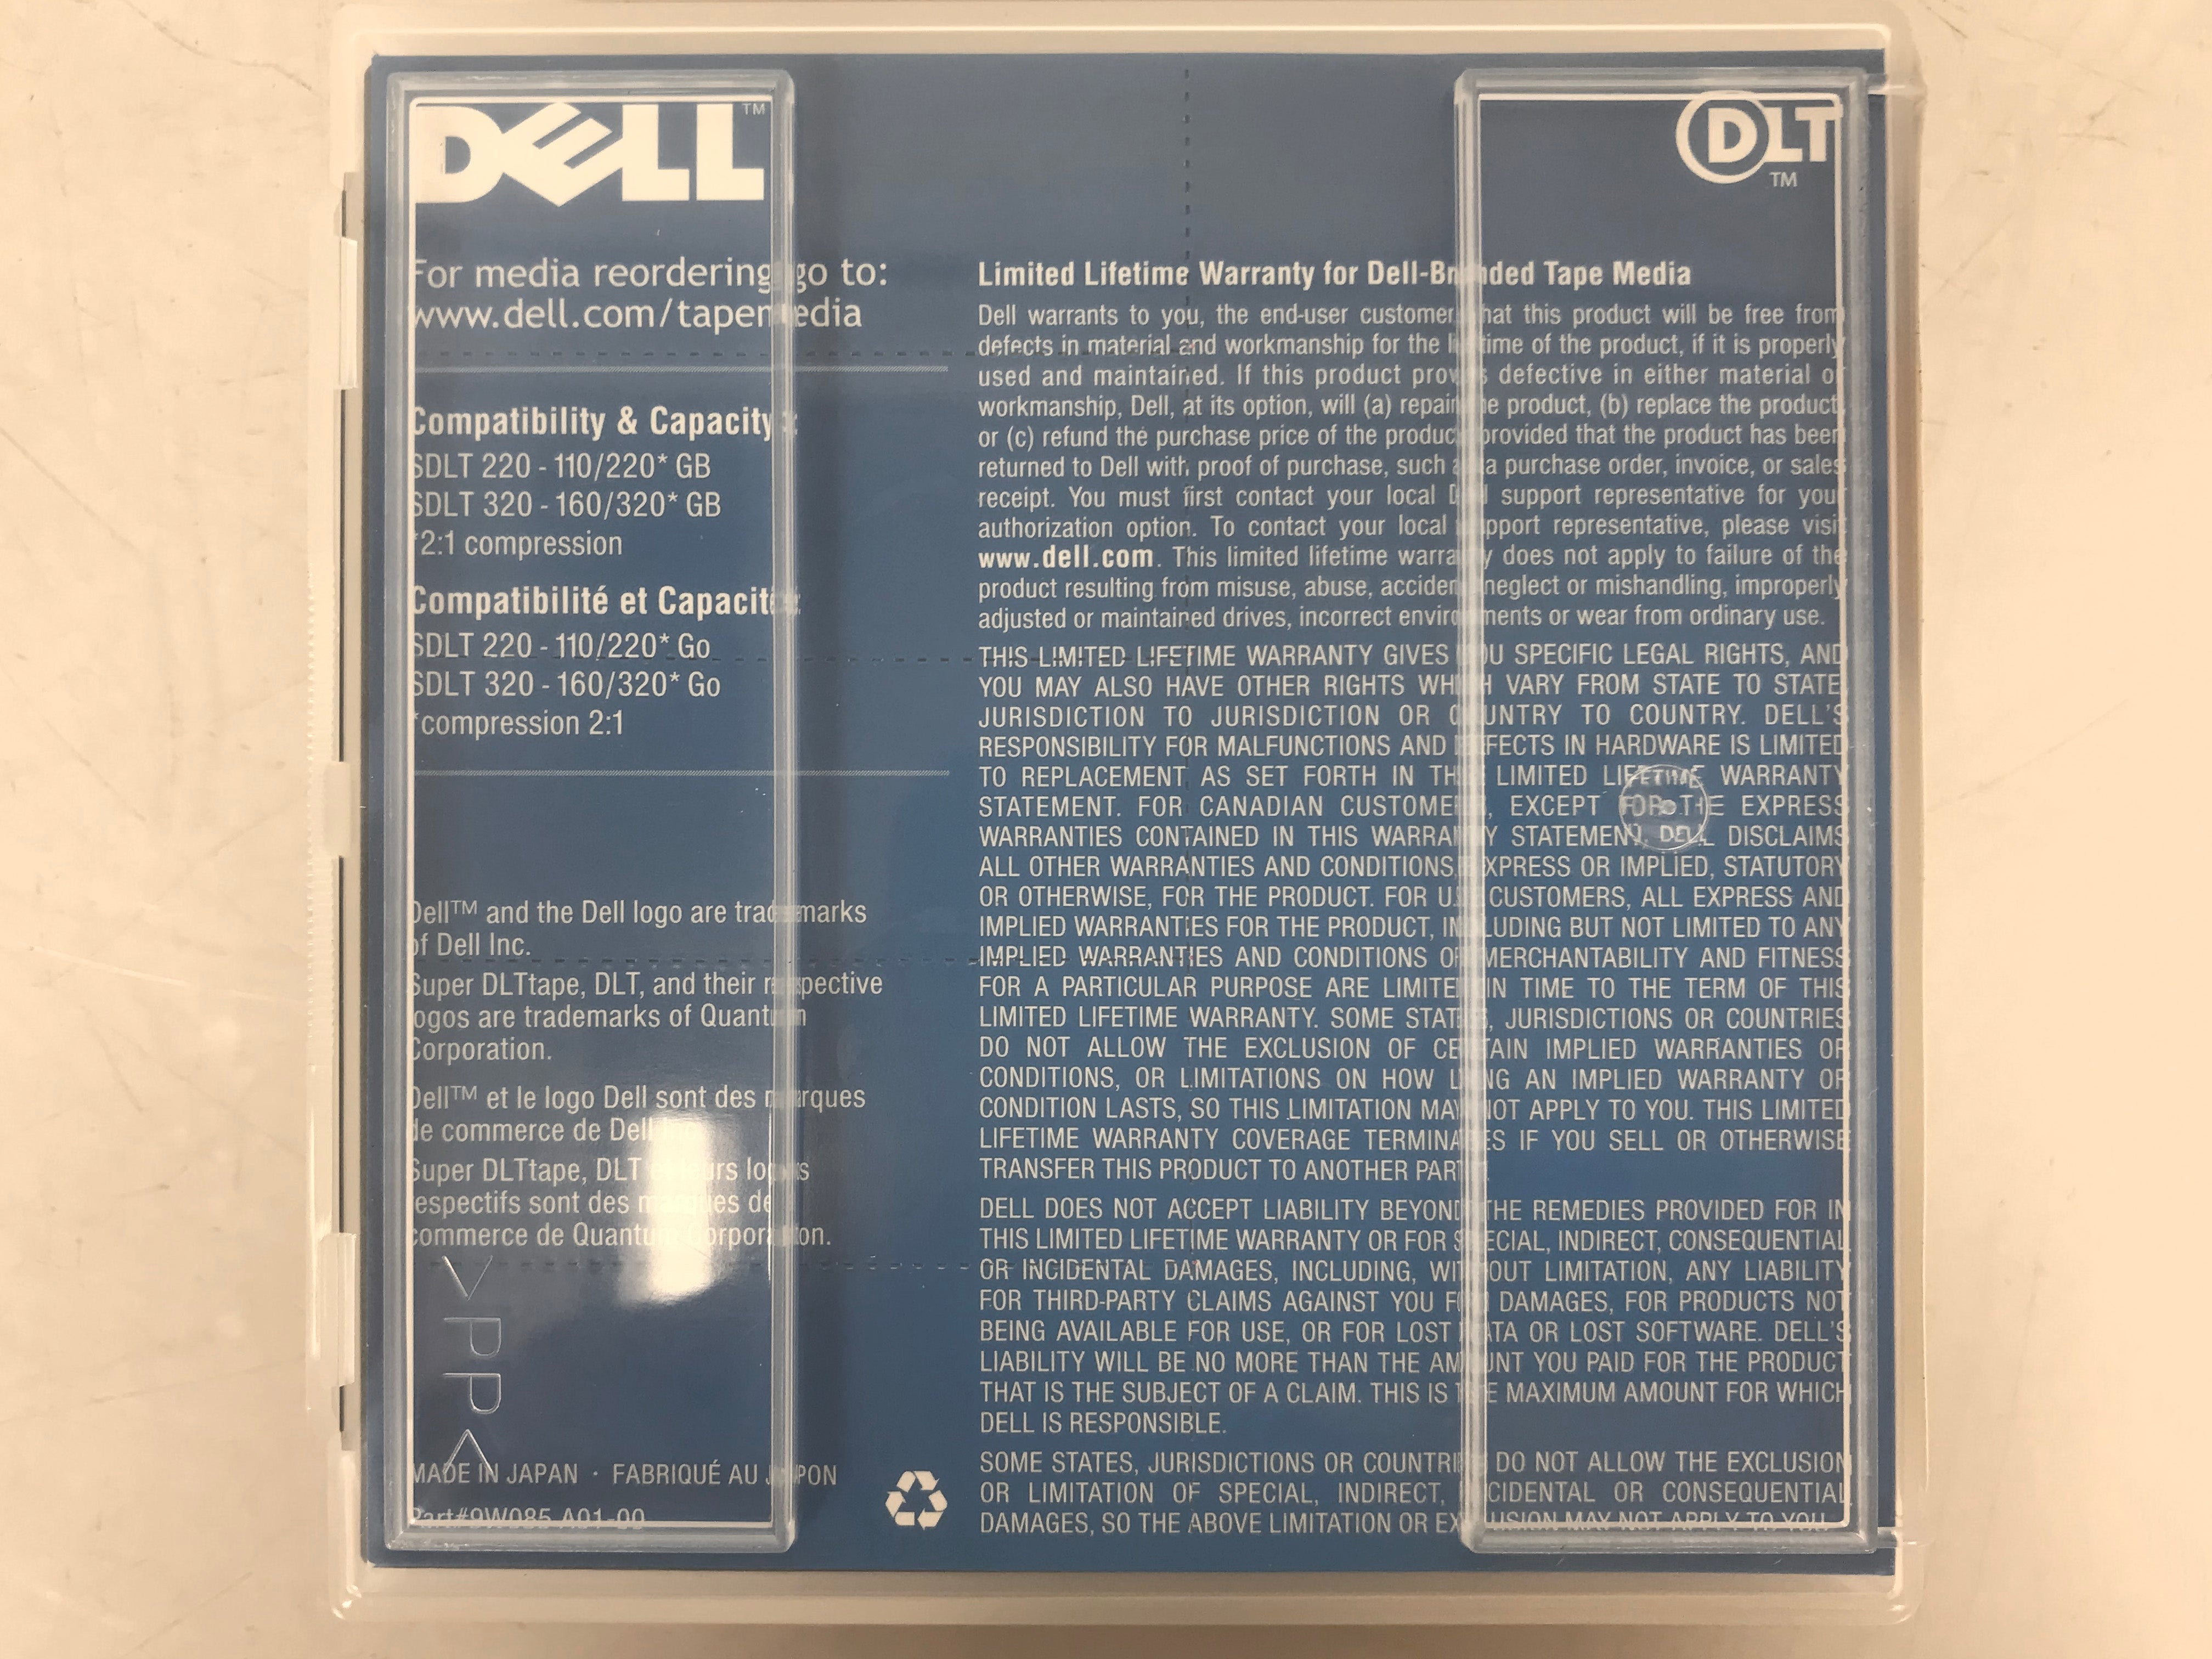 Dell Super DLTtape I 160GB/320GB 9W085 Tape Cartridge